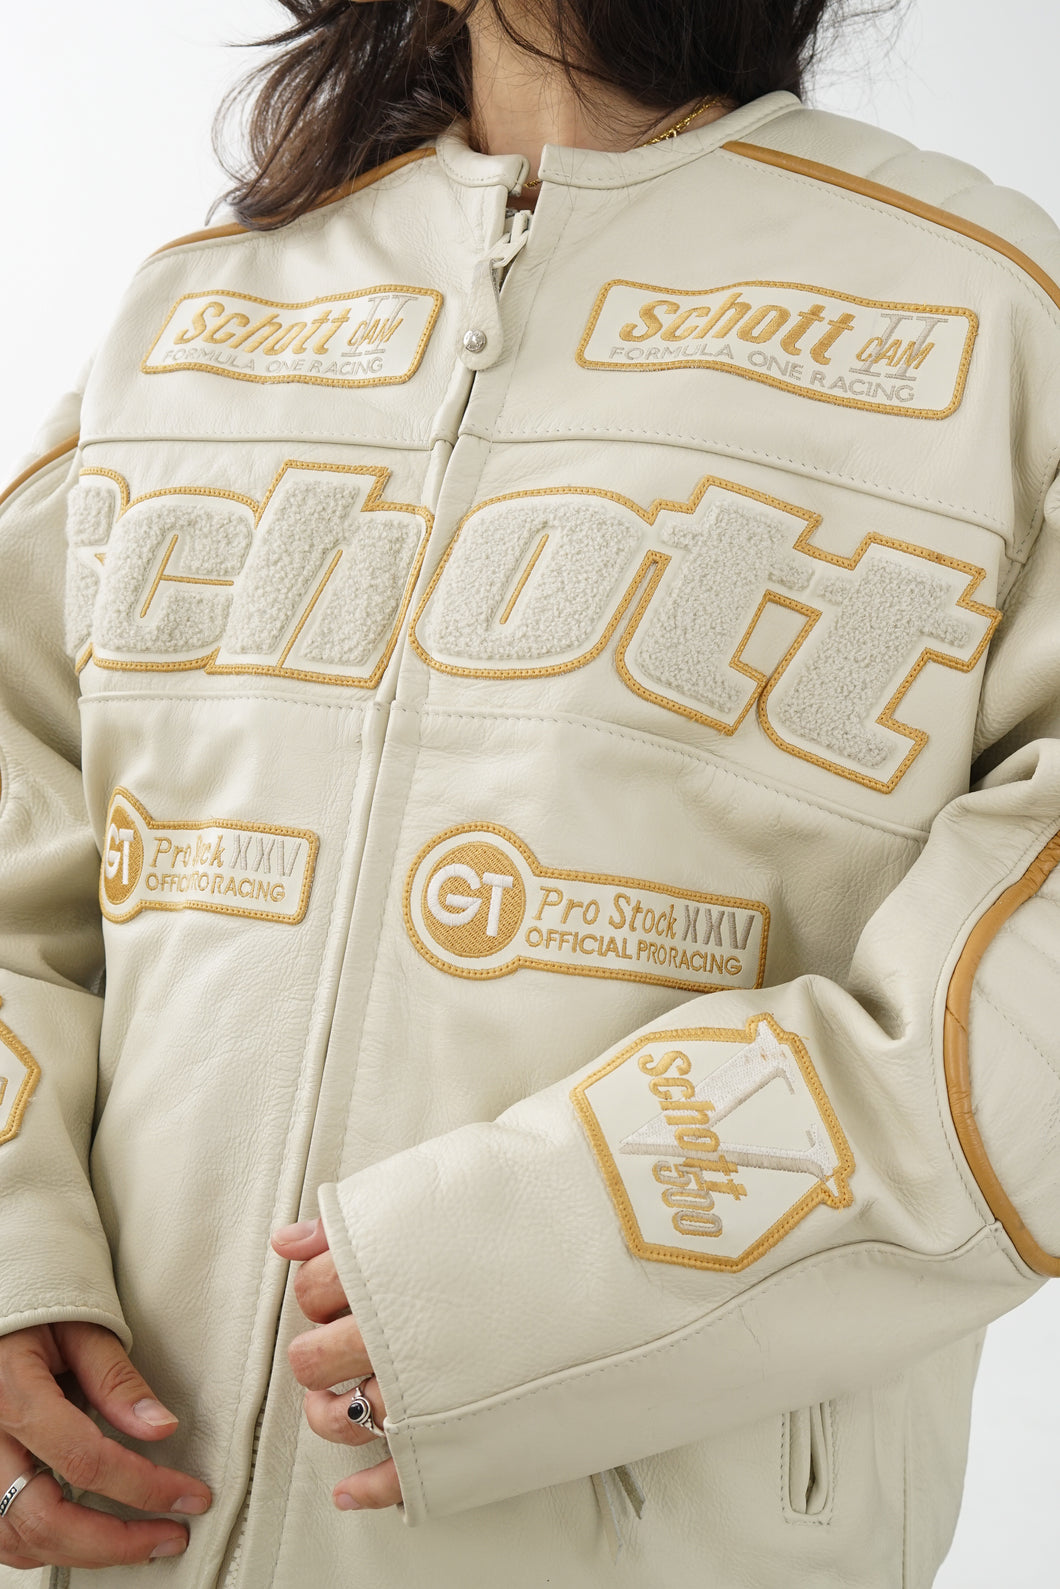 Formula 1 motorcylce Schott vintage leather jacket for men L